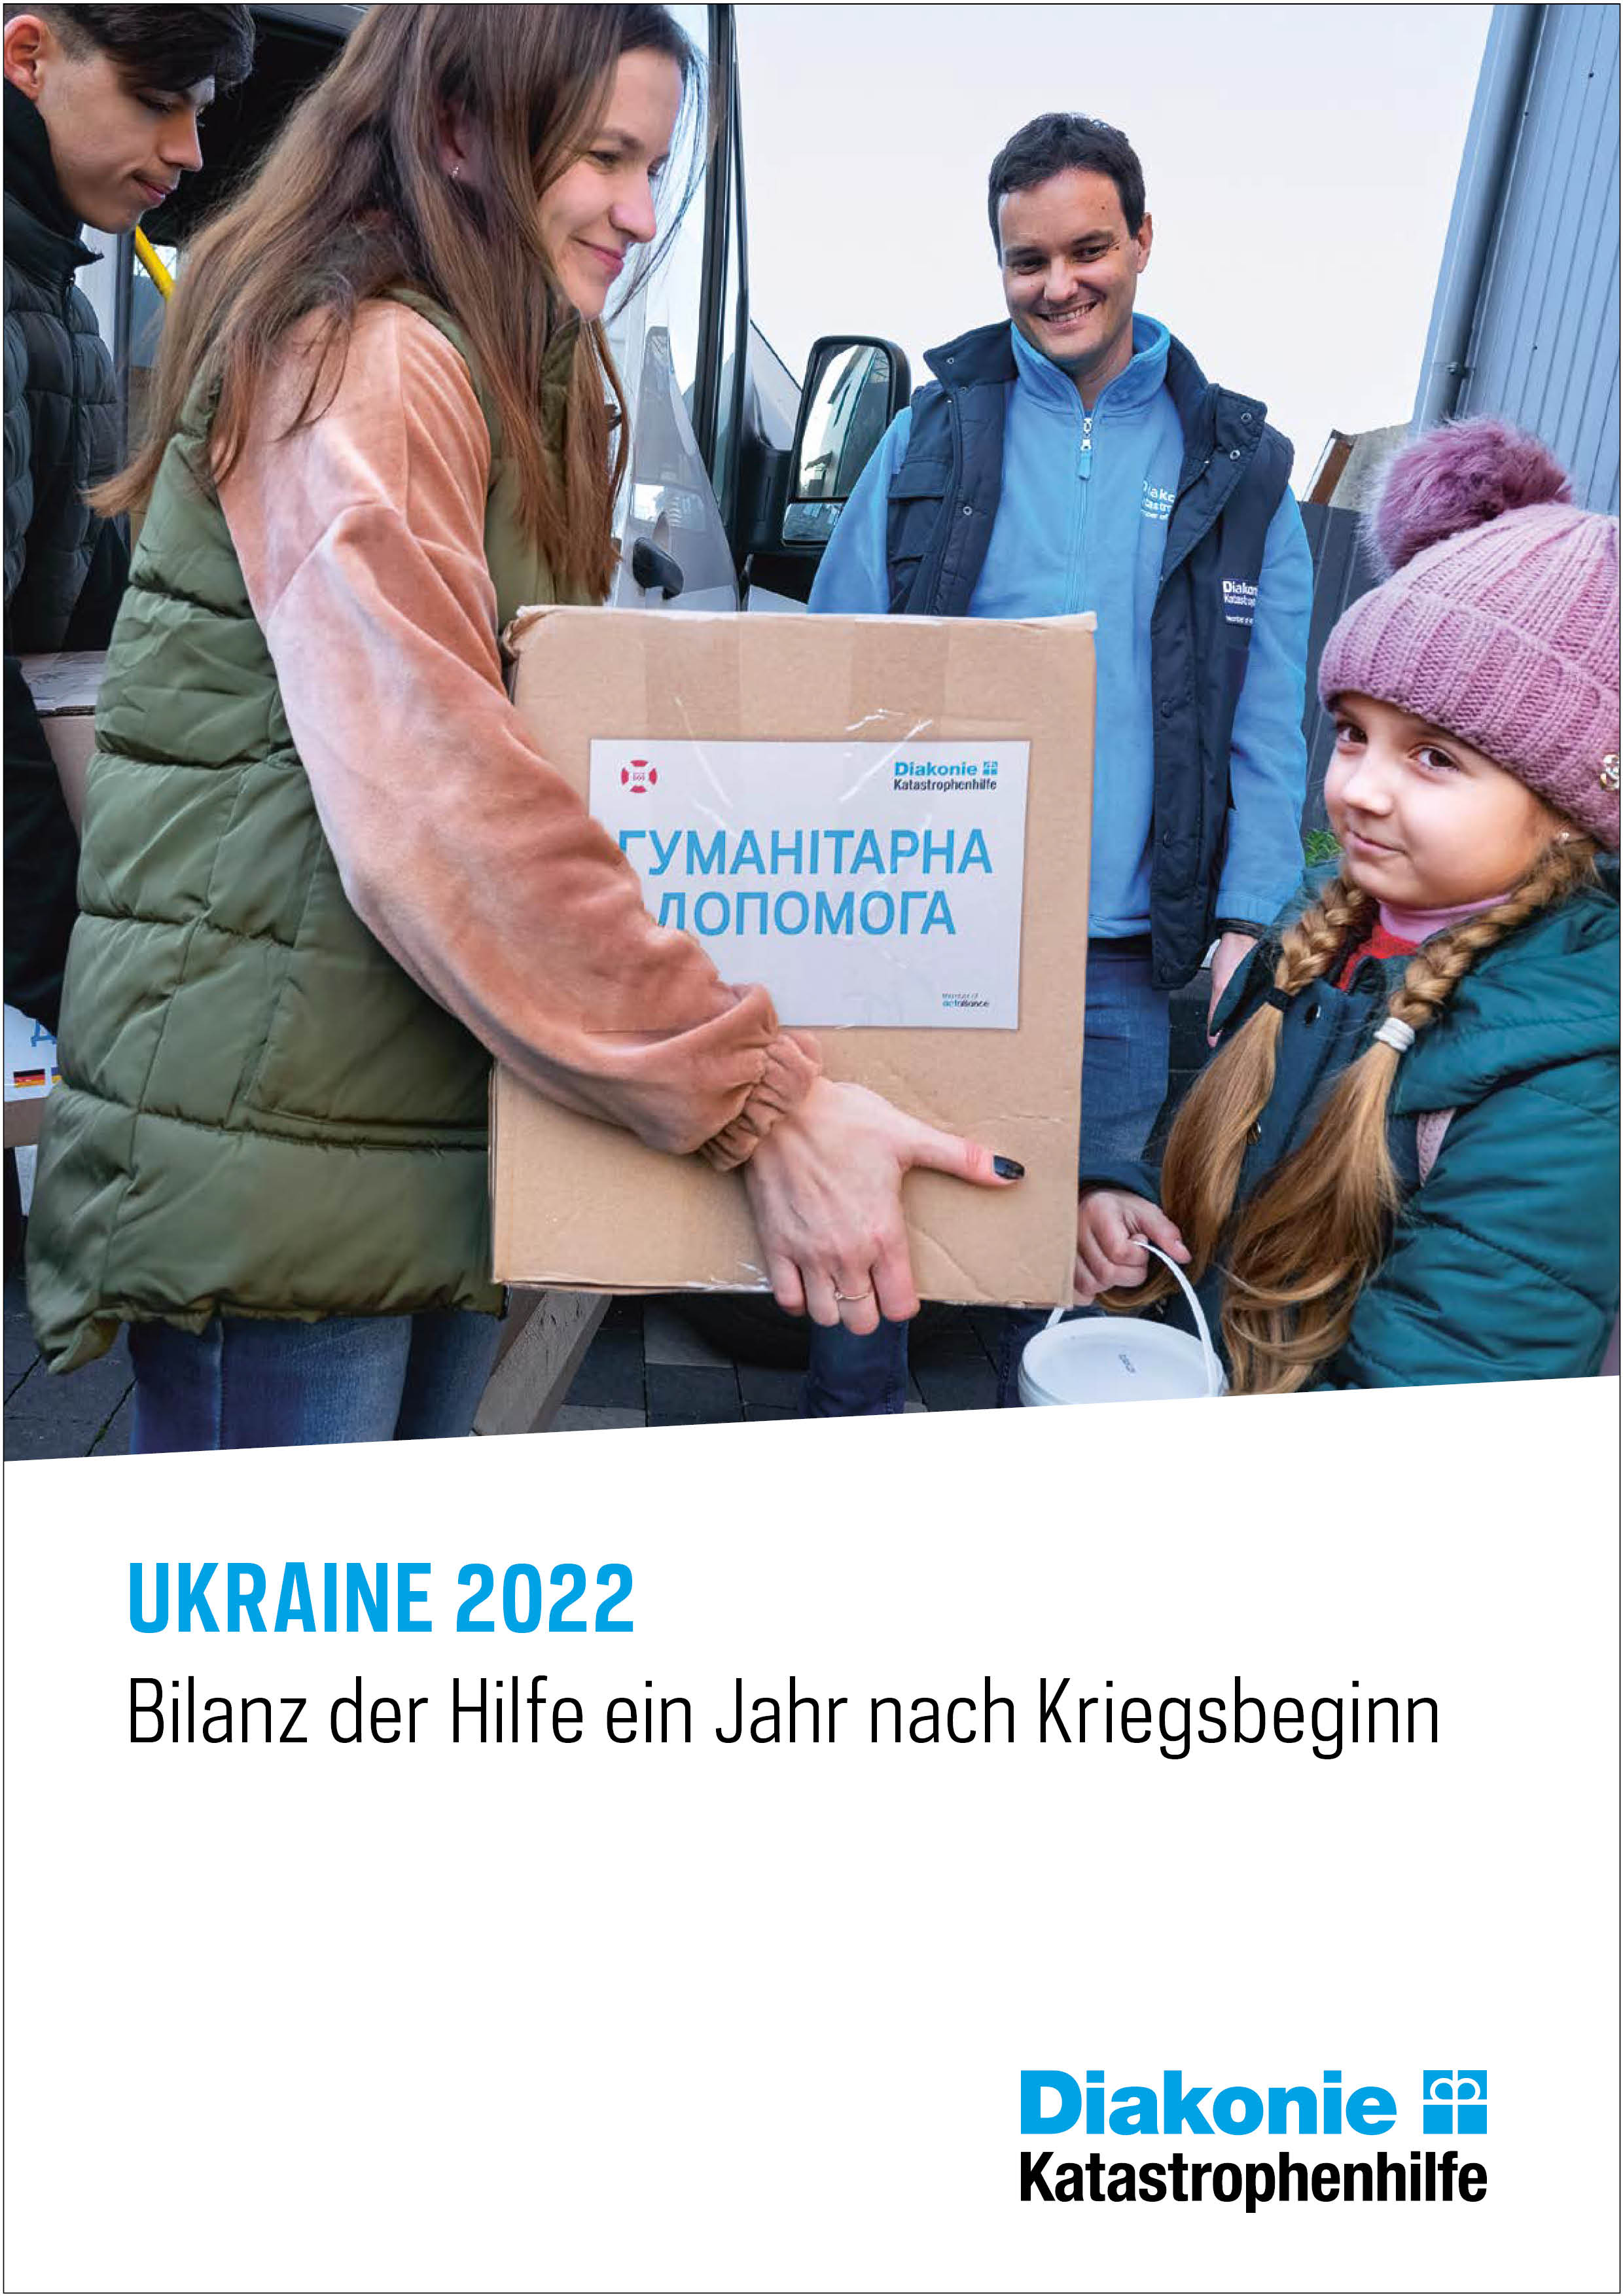 Ukraine 2022 - Bilanz der Hilfe ein Jahr nach Kriegsbeginn